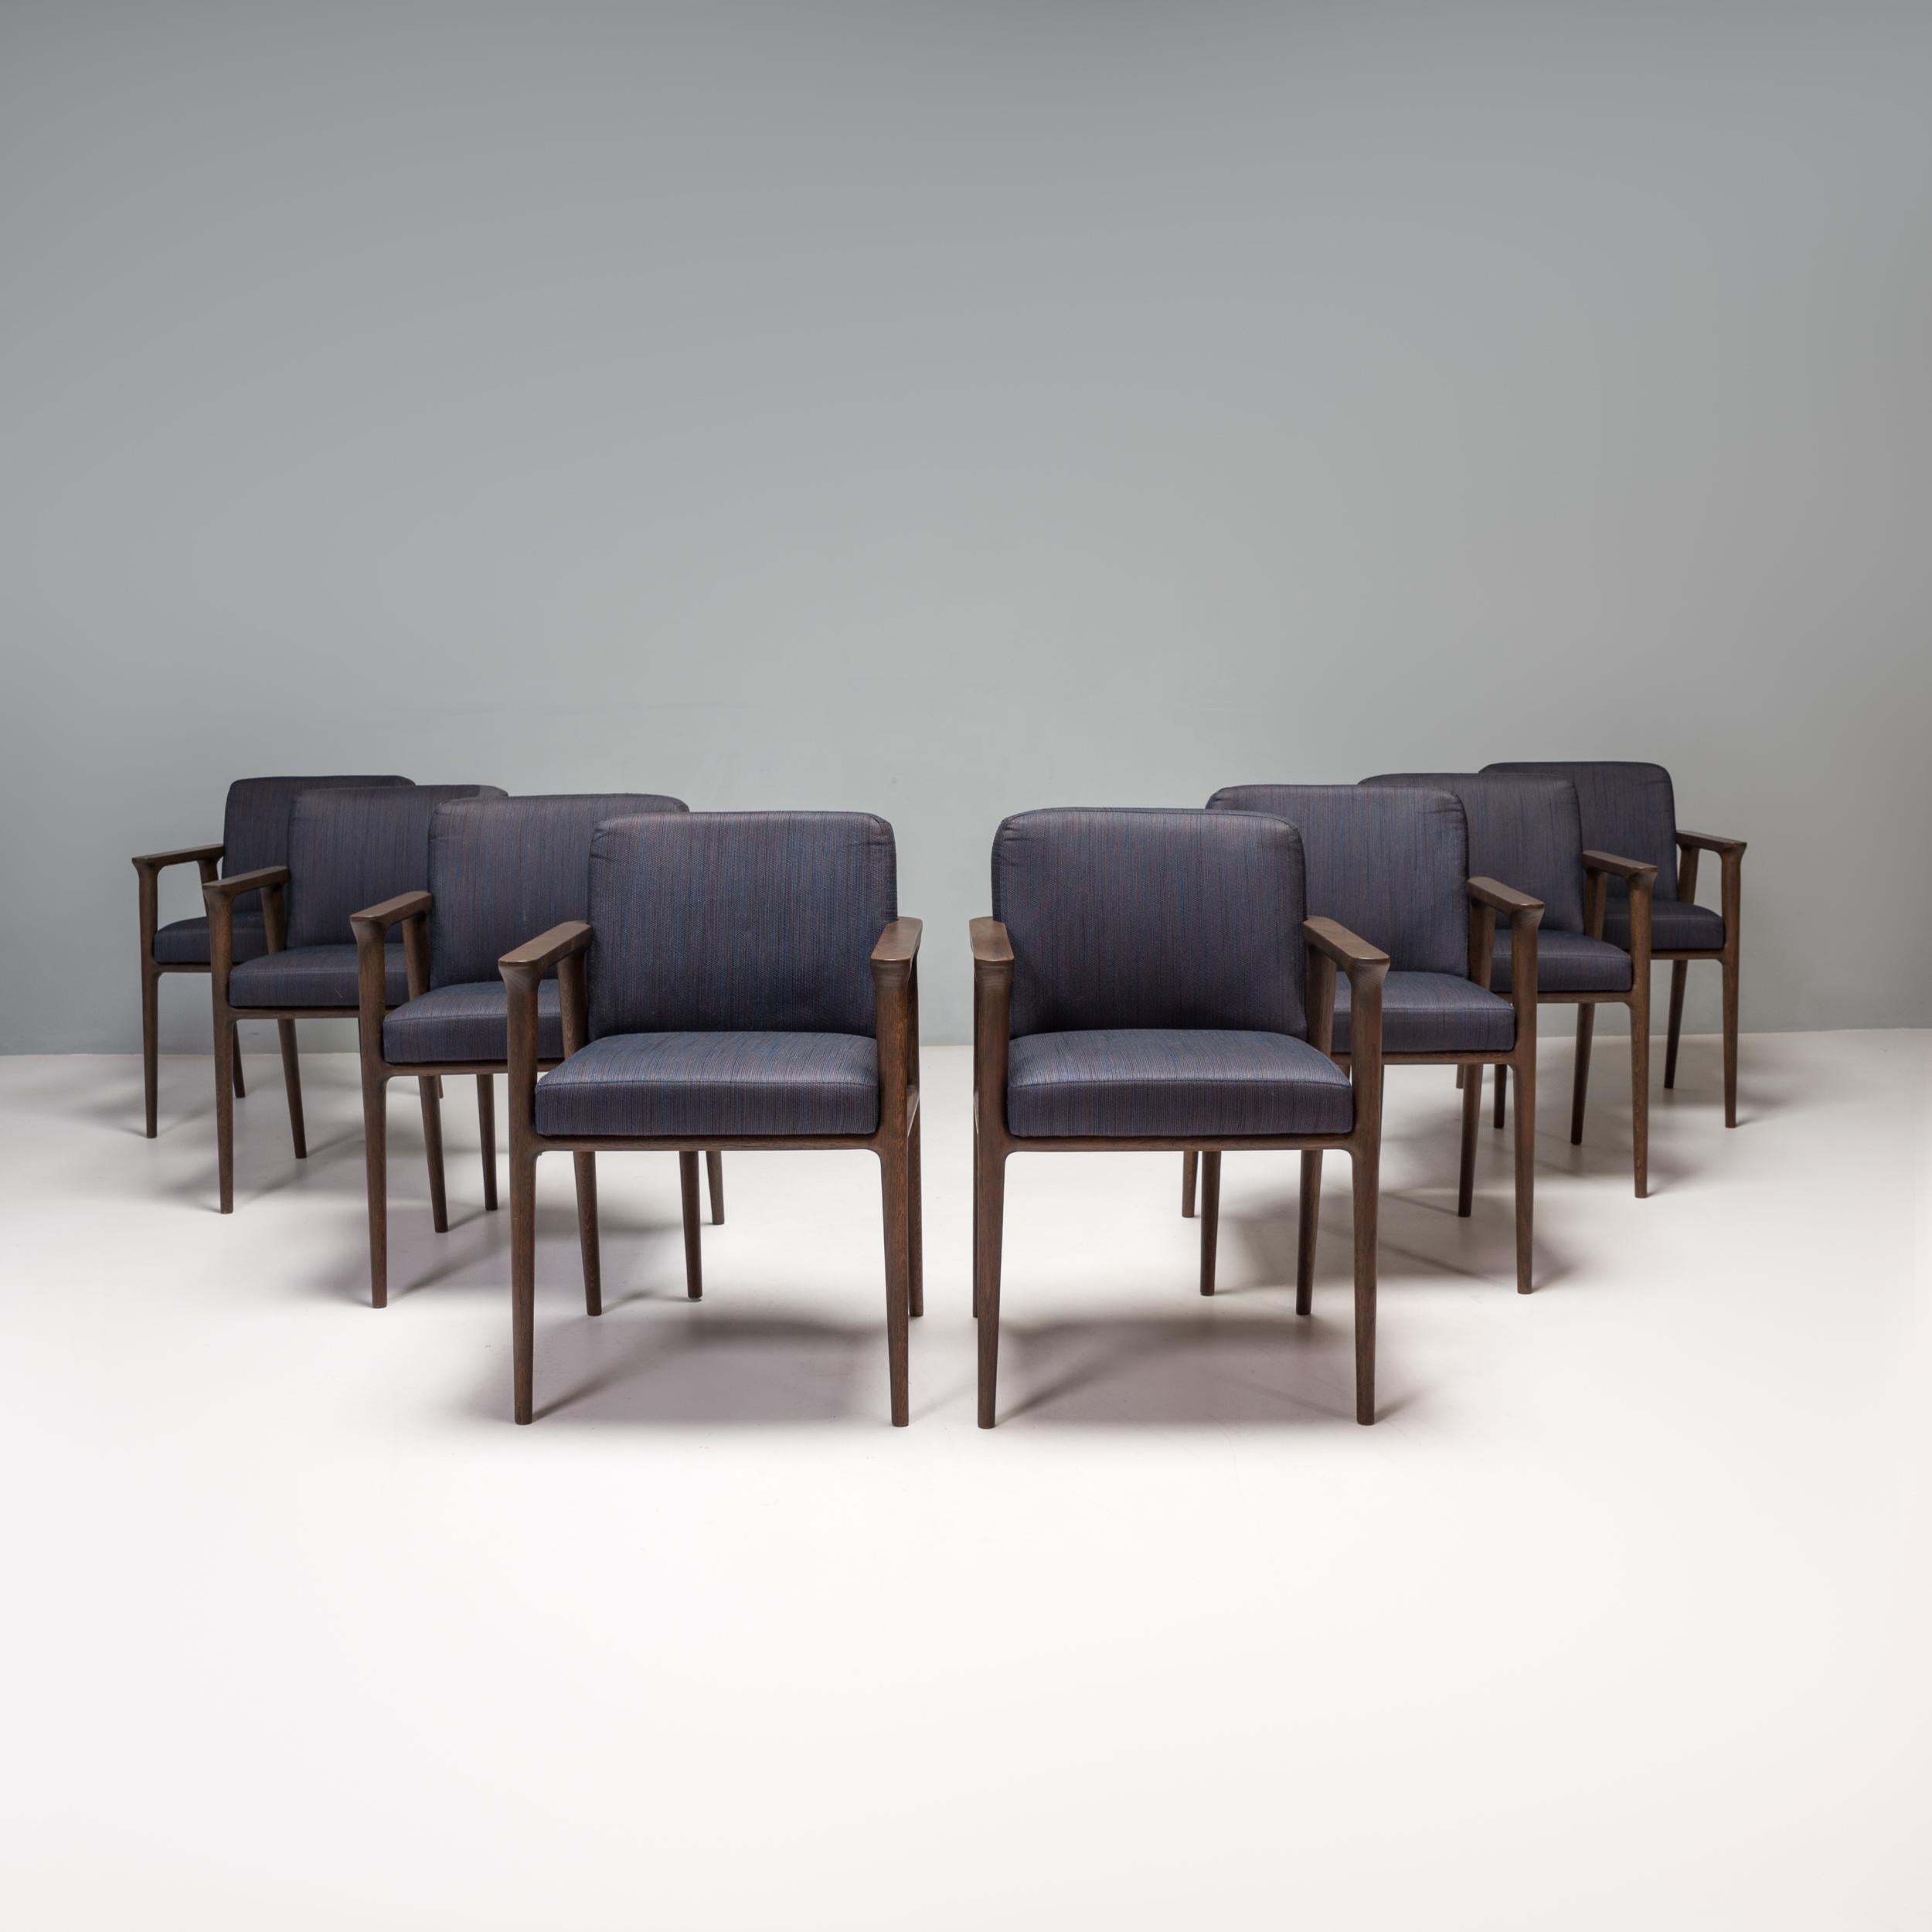 Conçue à l'origine par Marcel Wanders pour Moooi en 2013, la gamme Zio respire l'élégance classique.

Fabriquées en chêne teinté wengé, les chaises de salle à manger sont dotées de pieds fuselés et d'un dossier arrondi.

Les coussins séparés de